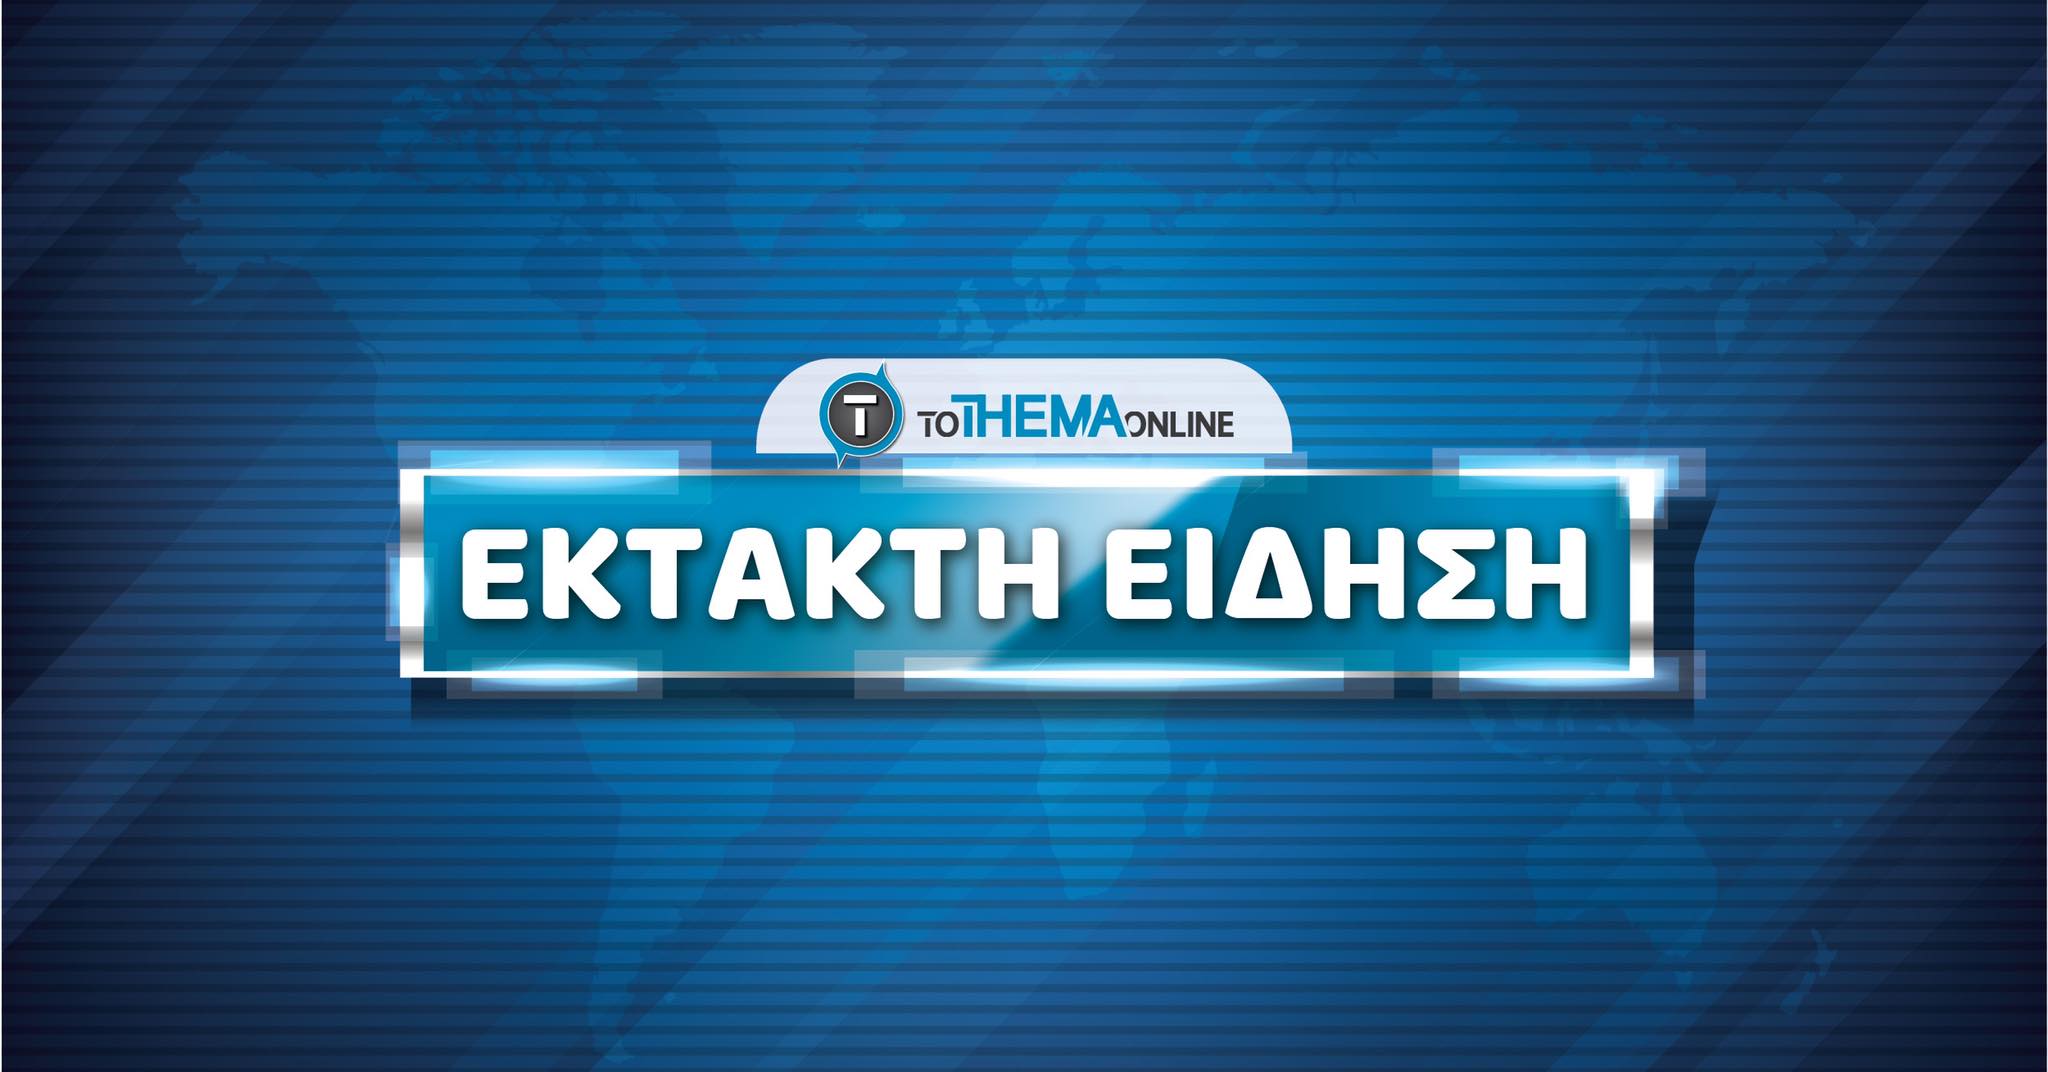 ΤΩΡΑ: Σεισμός 5.5 ρίχτερ στην Τουρκία σύμφωνα με το Μεσογειακό Σεισμολογικό Κέντρο